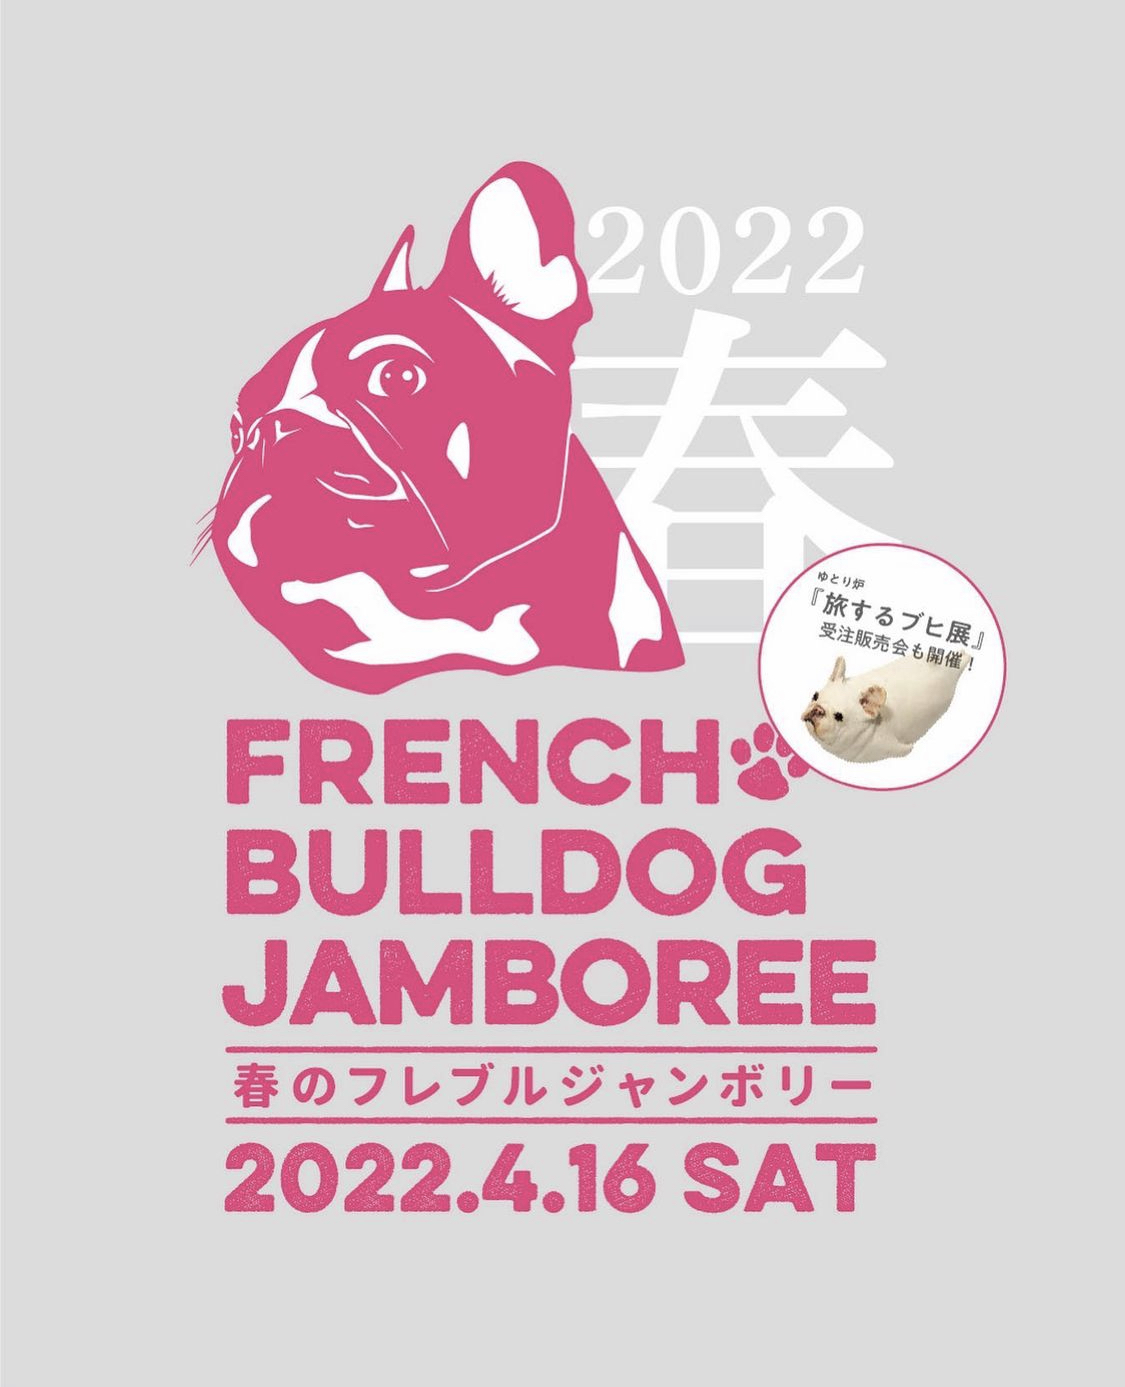 French Bulldog Jamboree ! 参戦します♪